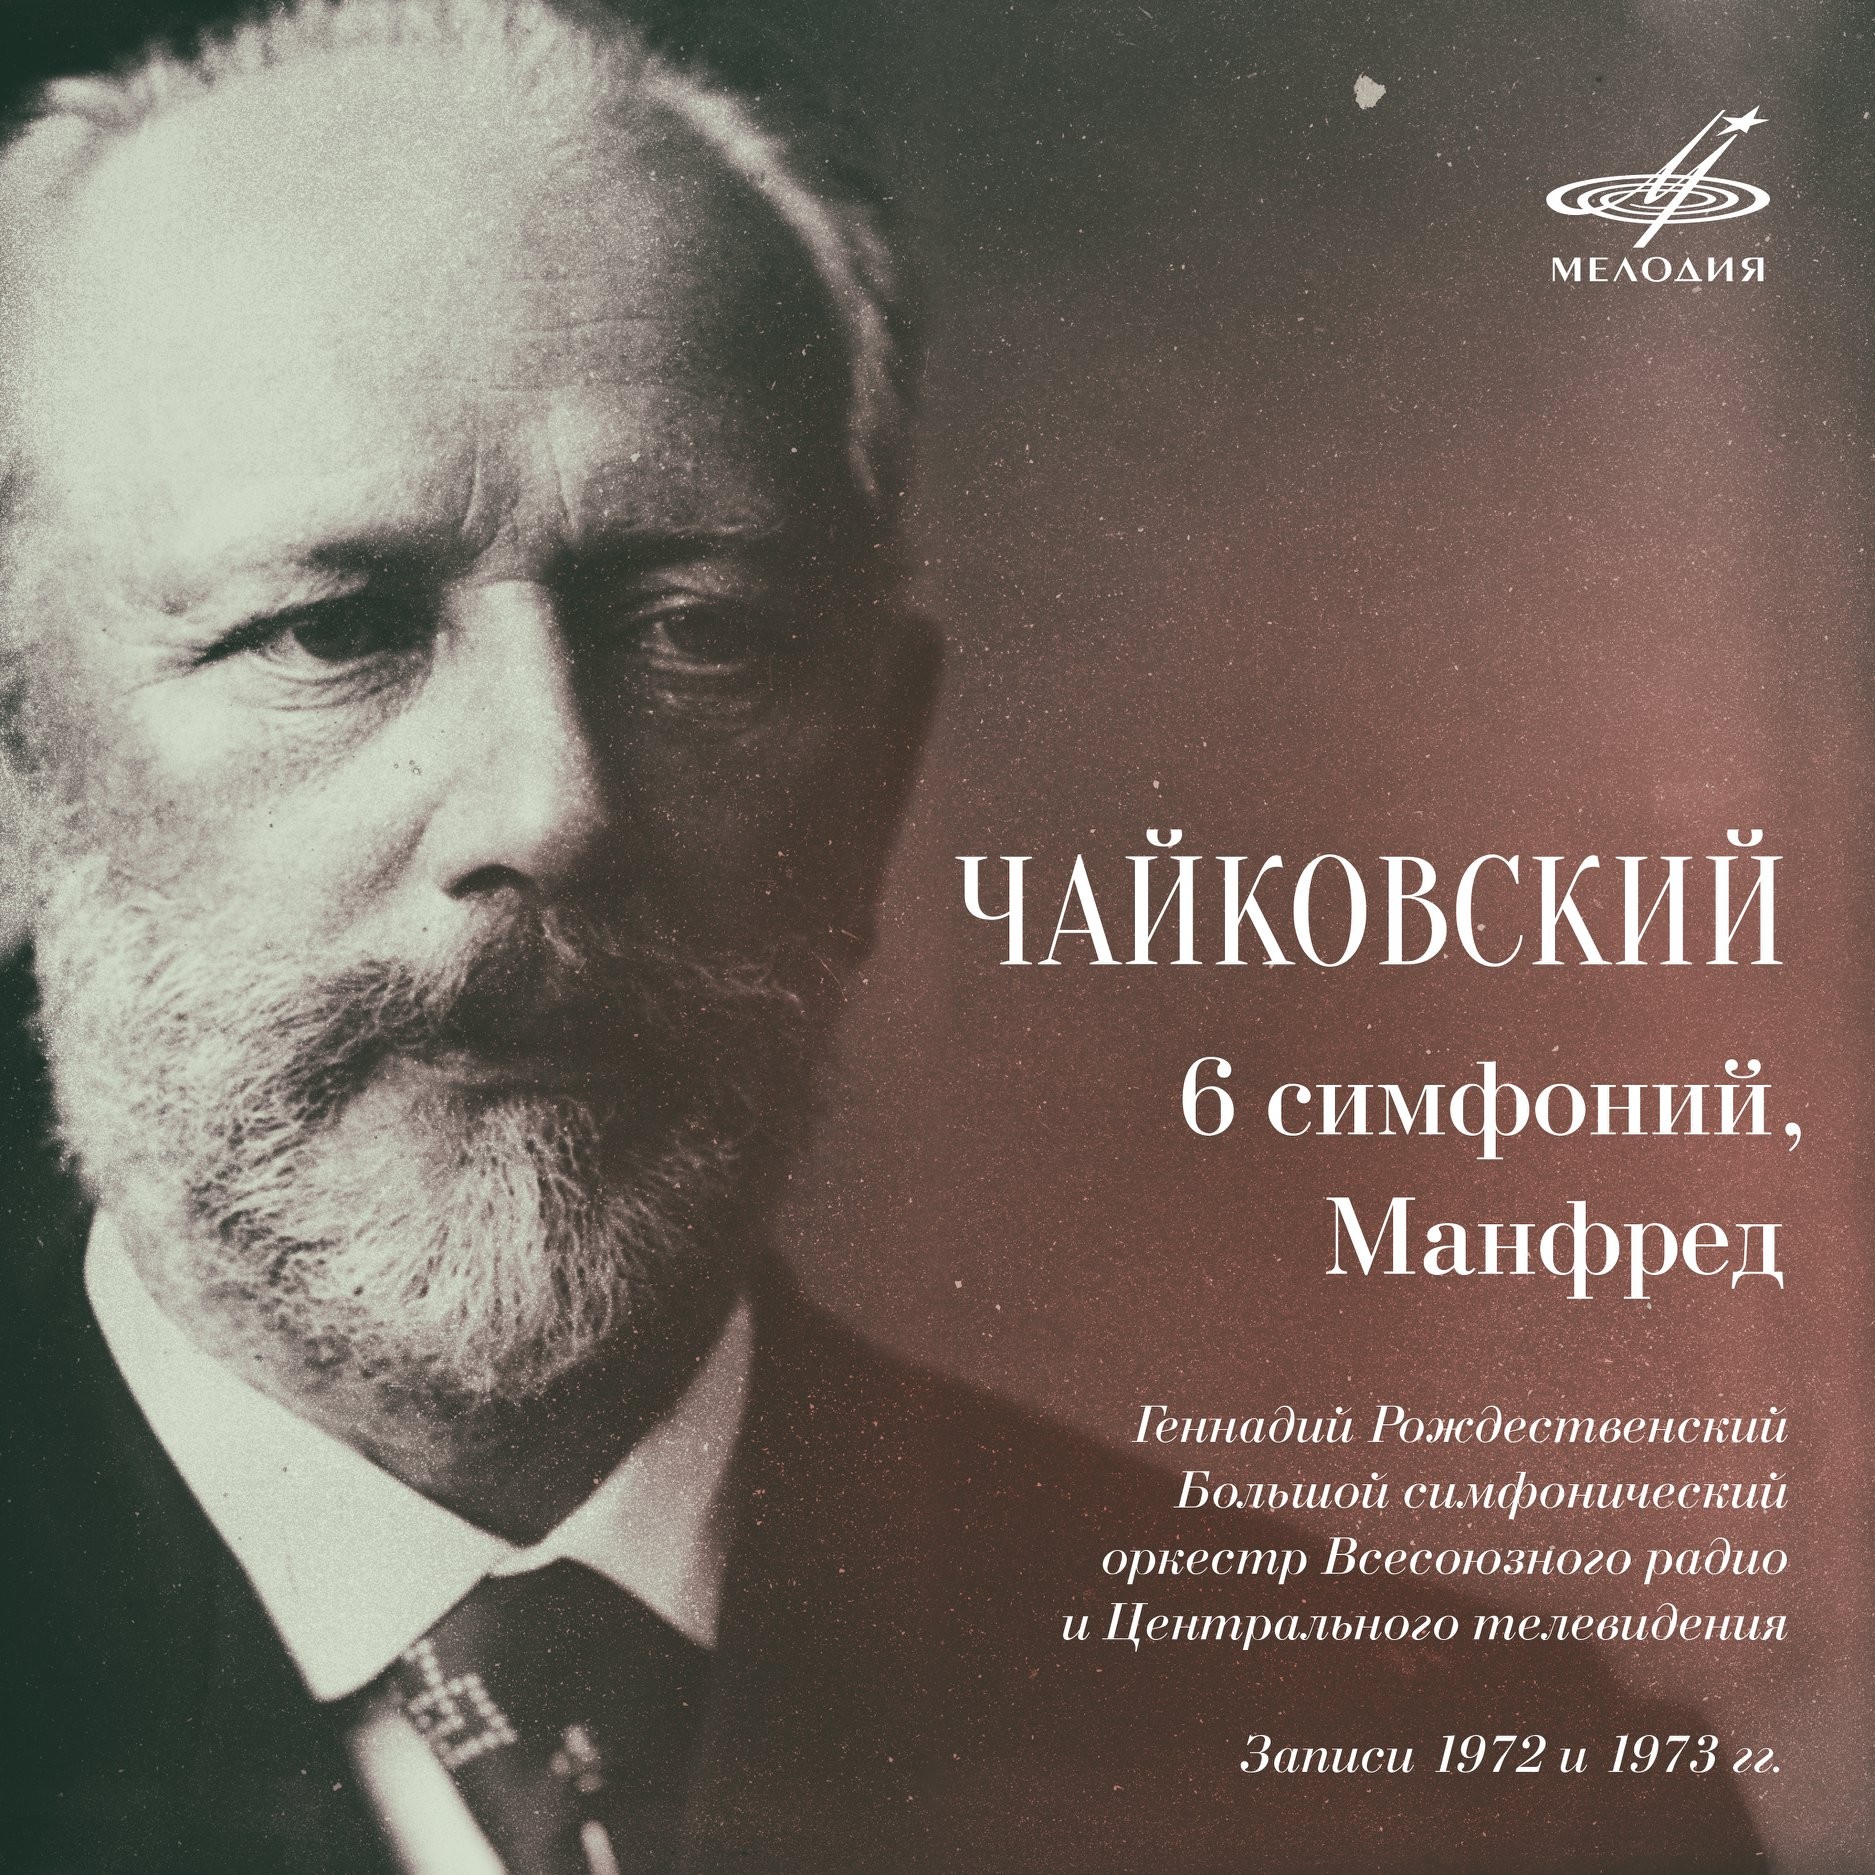 Чайковский: 6 симфоний, Манфред. Геннадий Рождественский